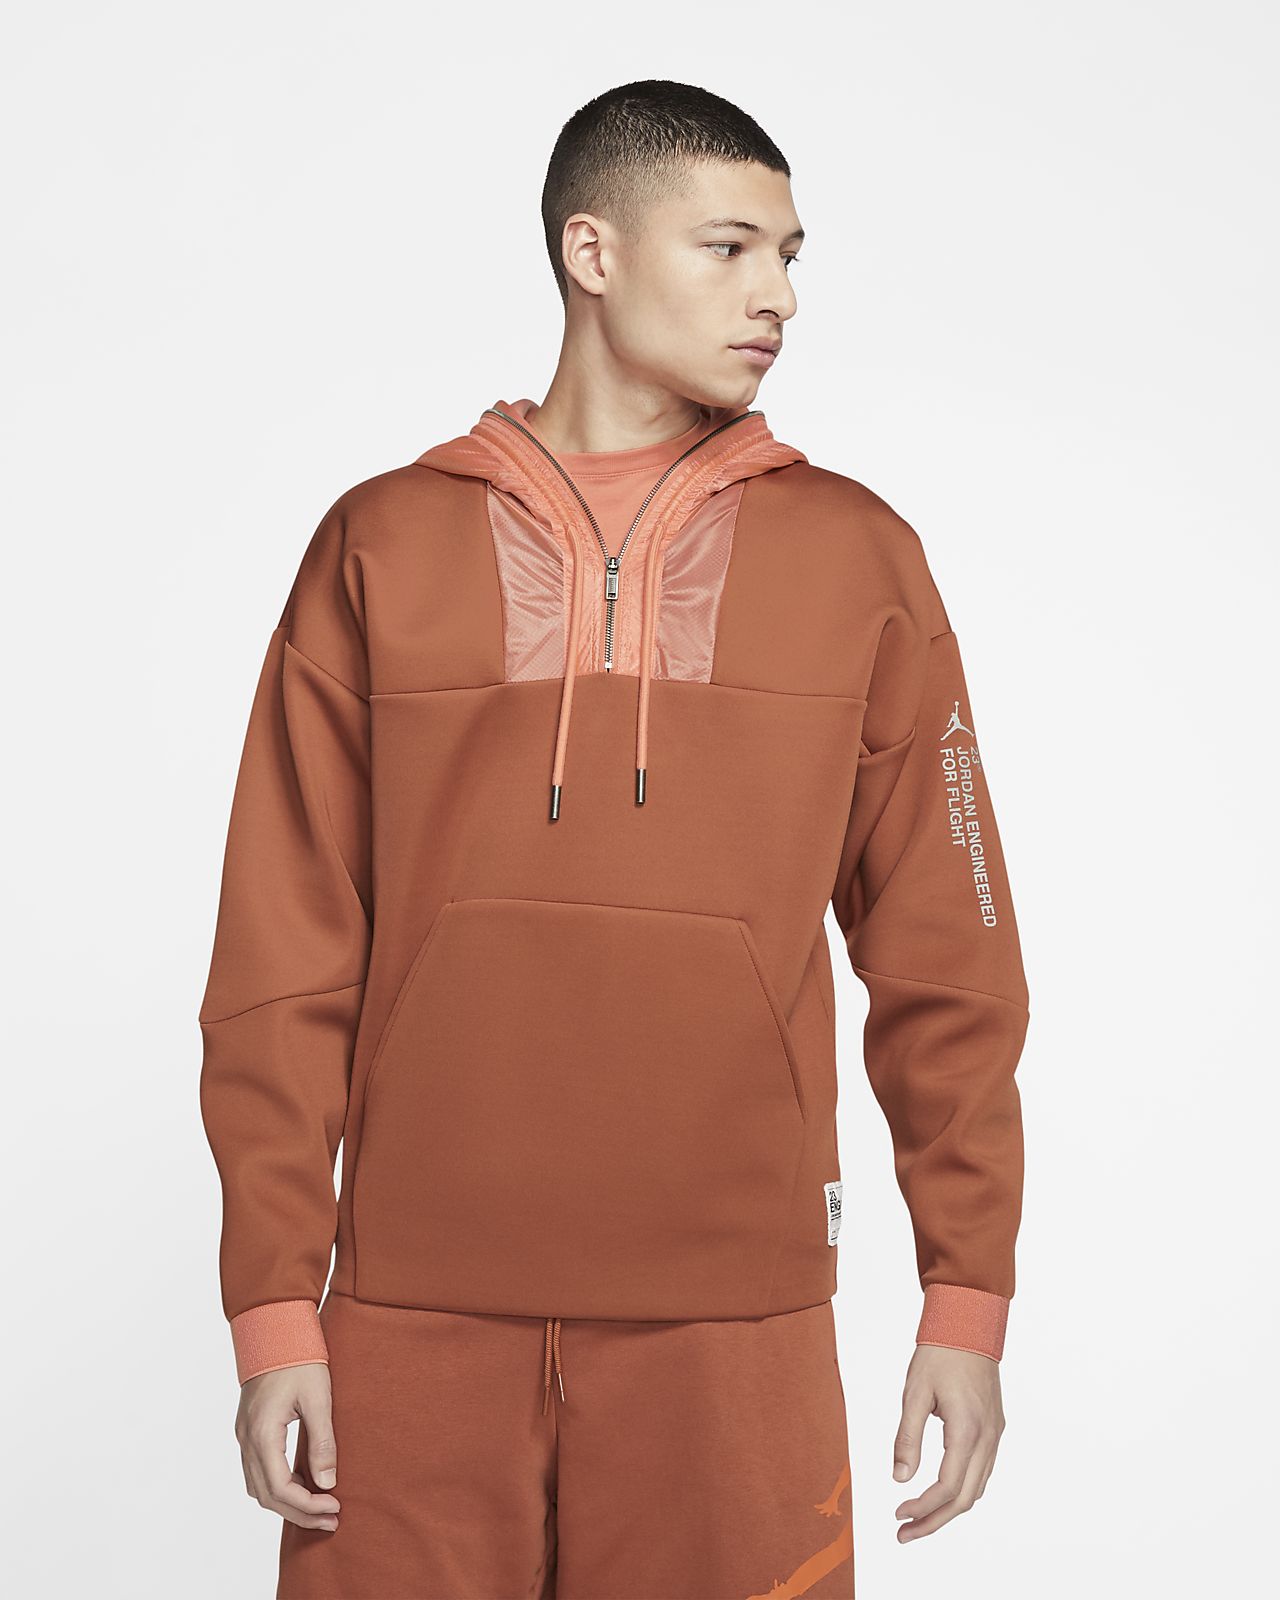 jordan hoodie orange